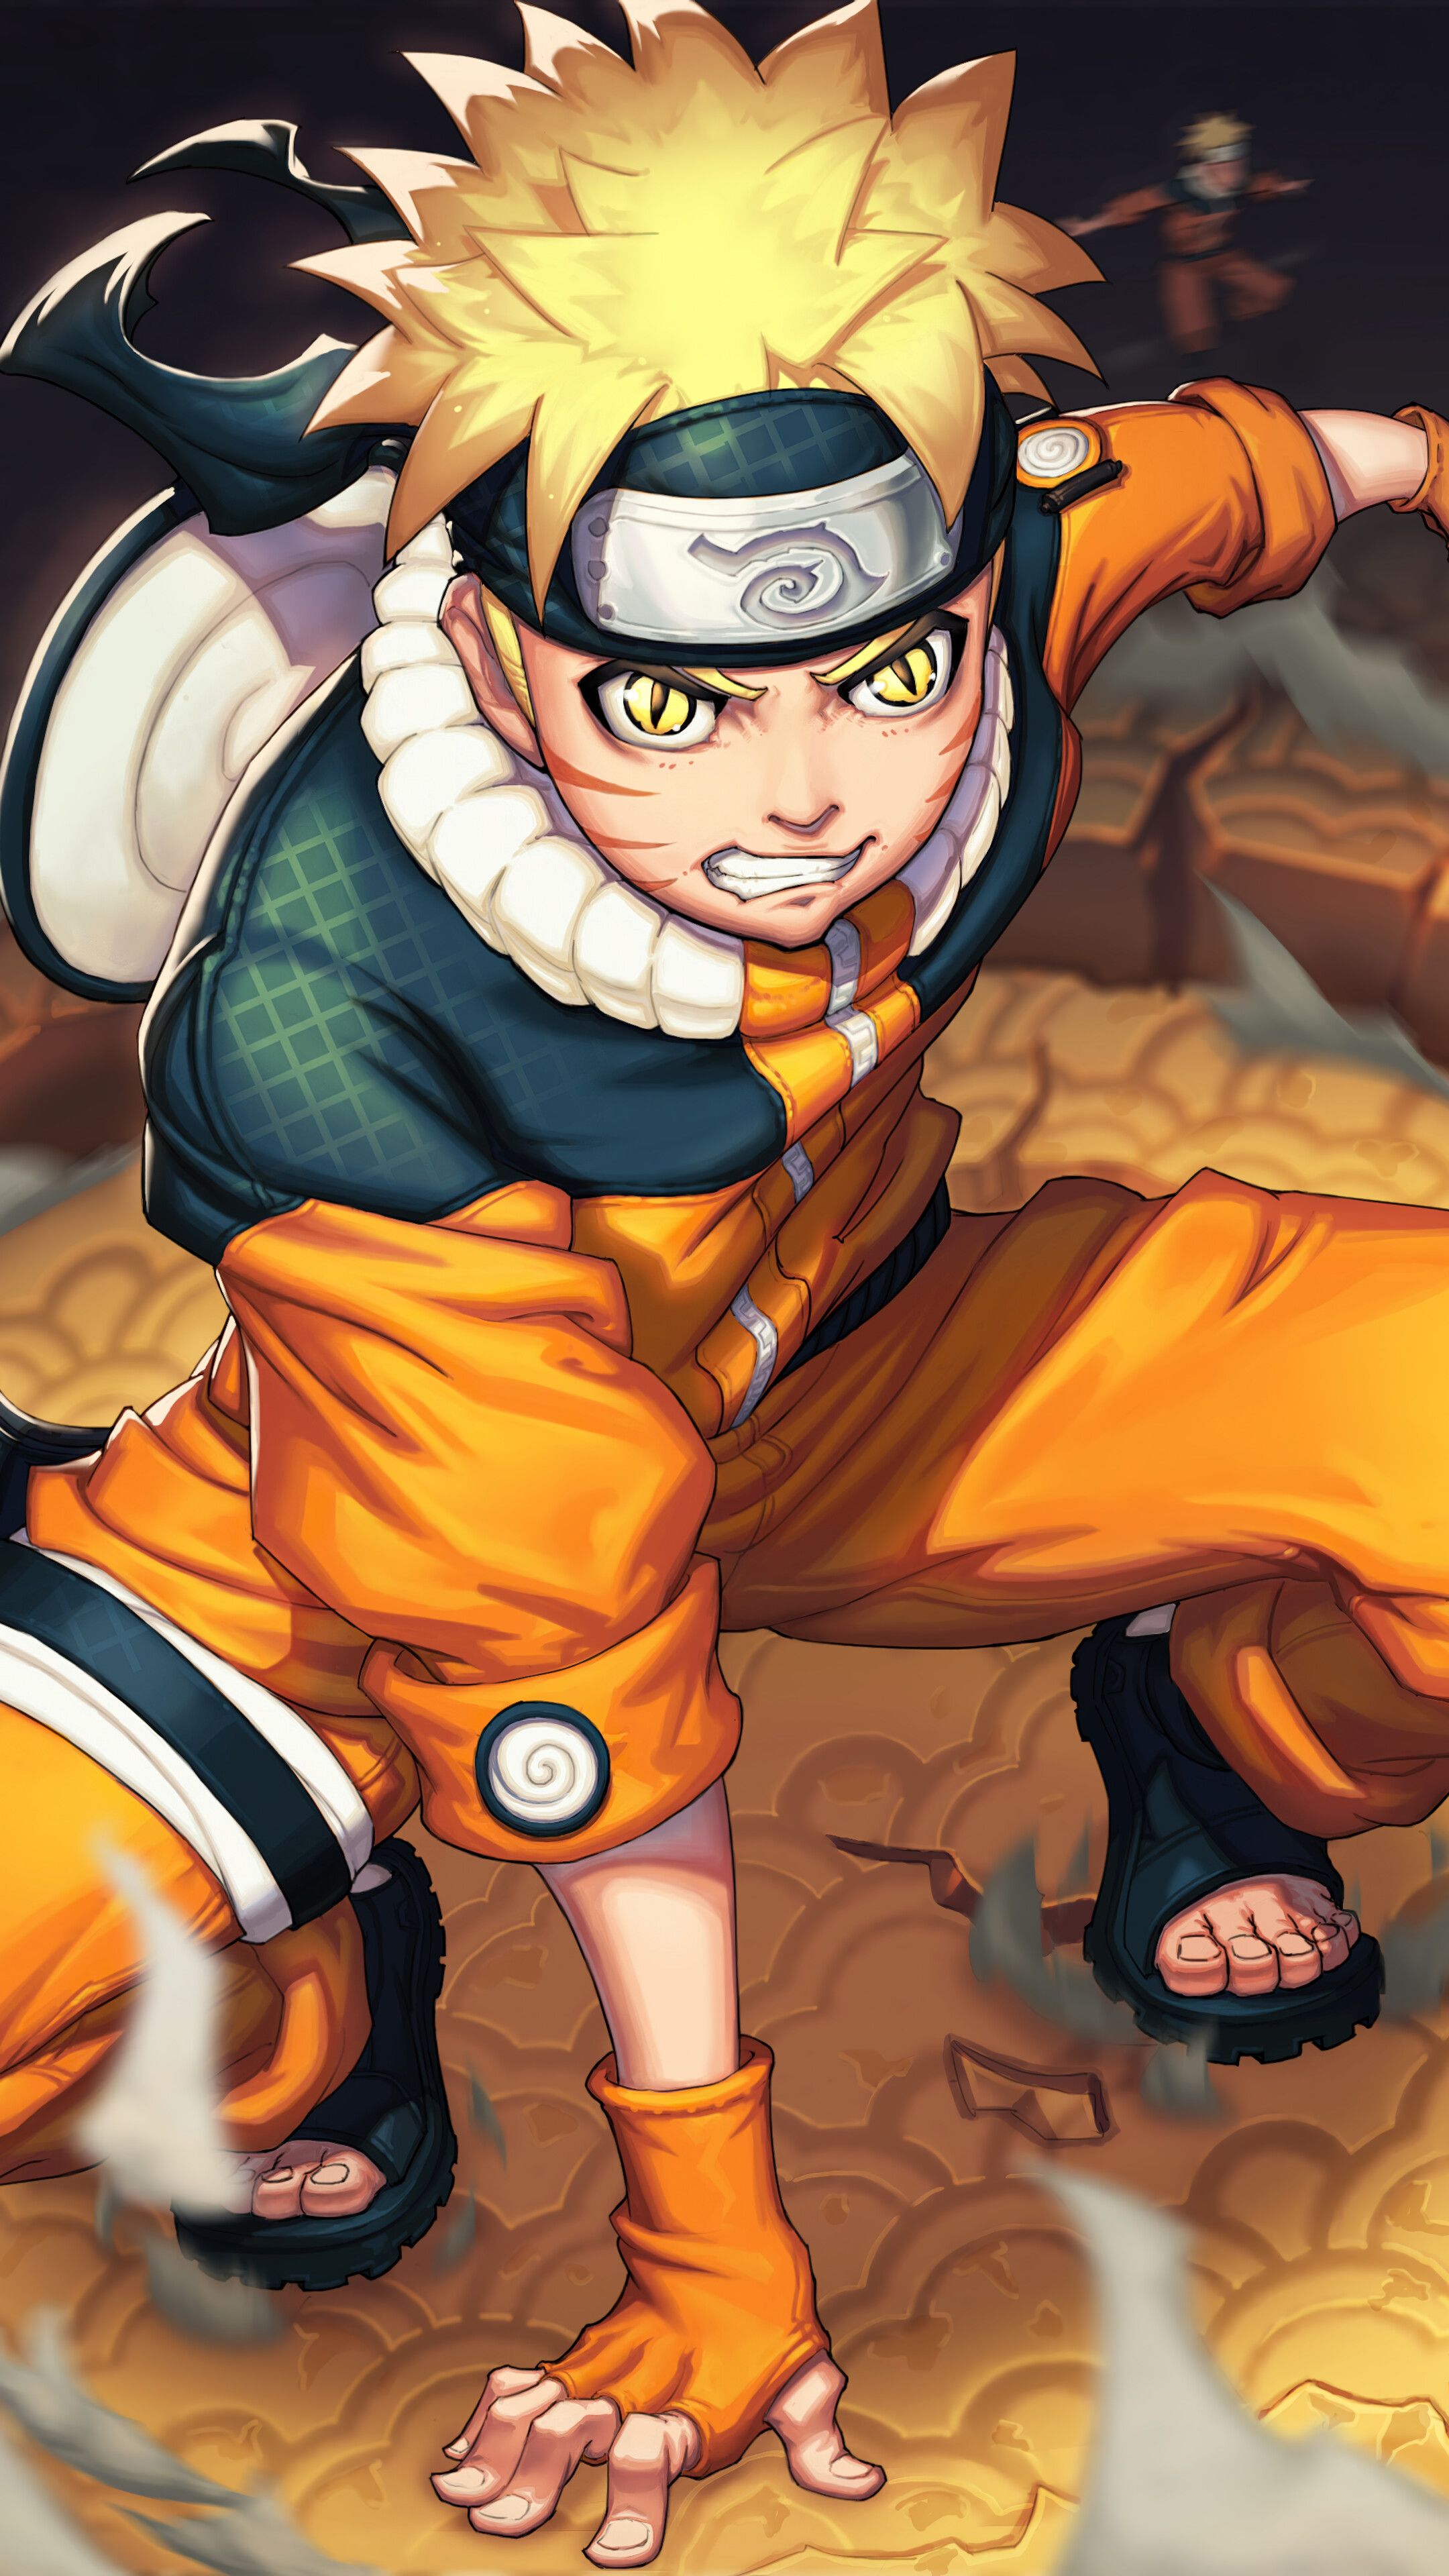 Naruto, 4K iPhone 6s, 6 HD Wallpaper, Image